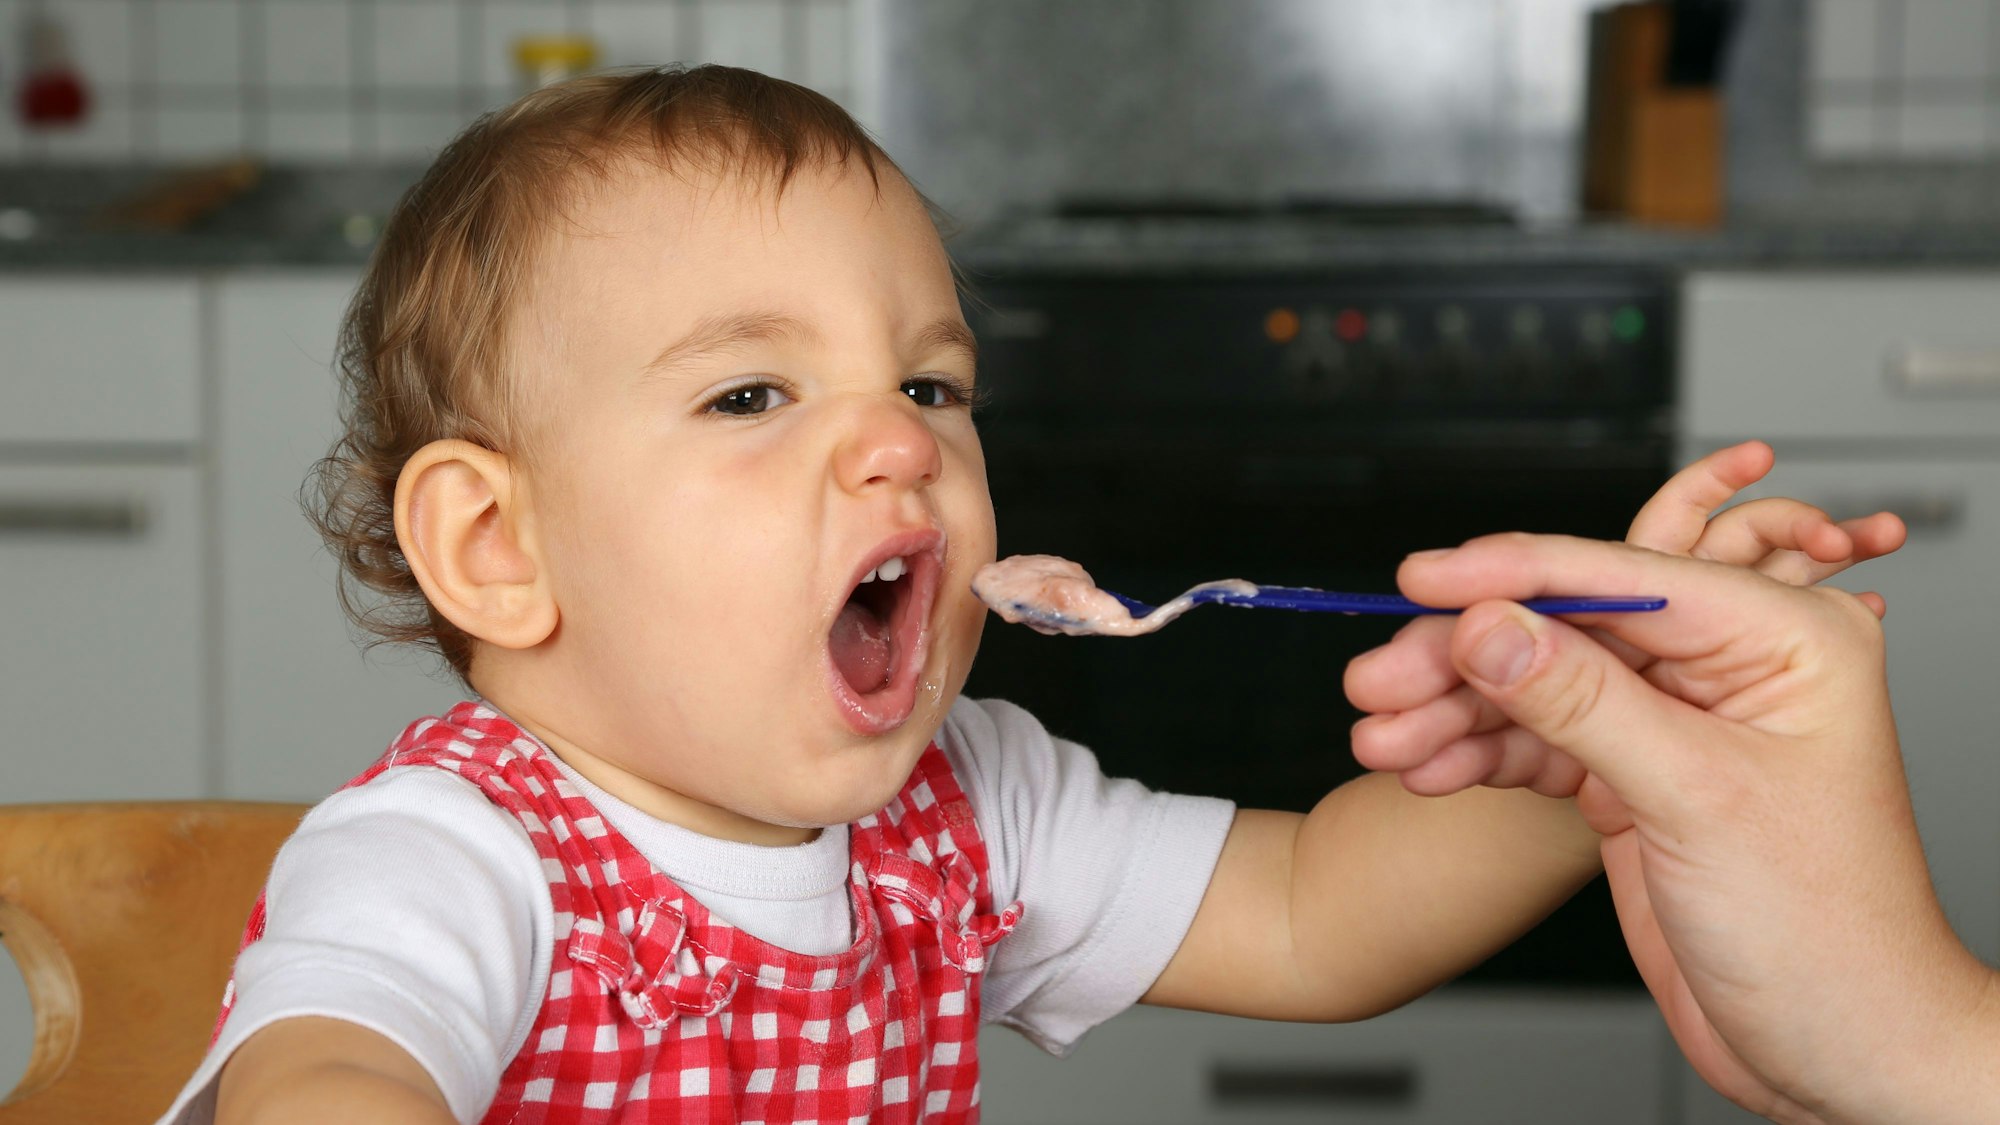 Ein Kleinkind wird mit Brei gefüttert (Symbolbild)